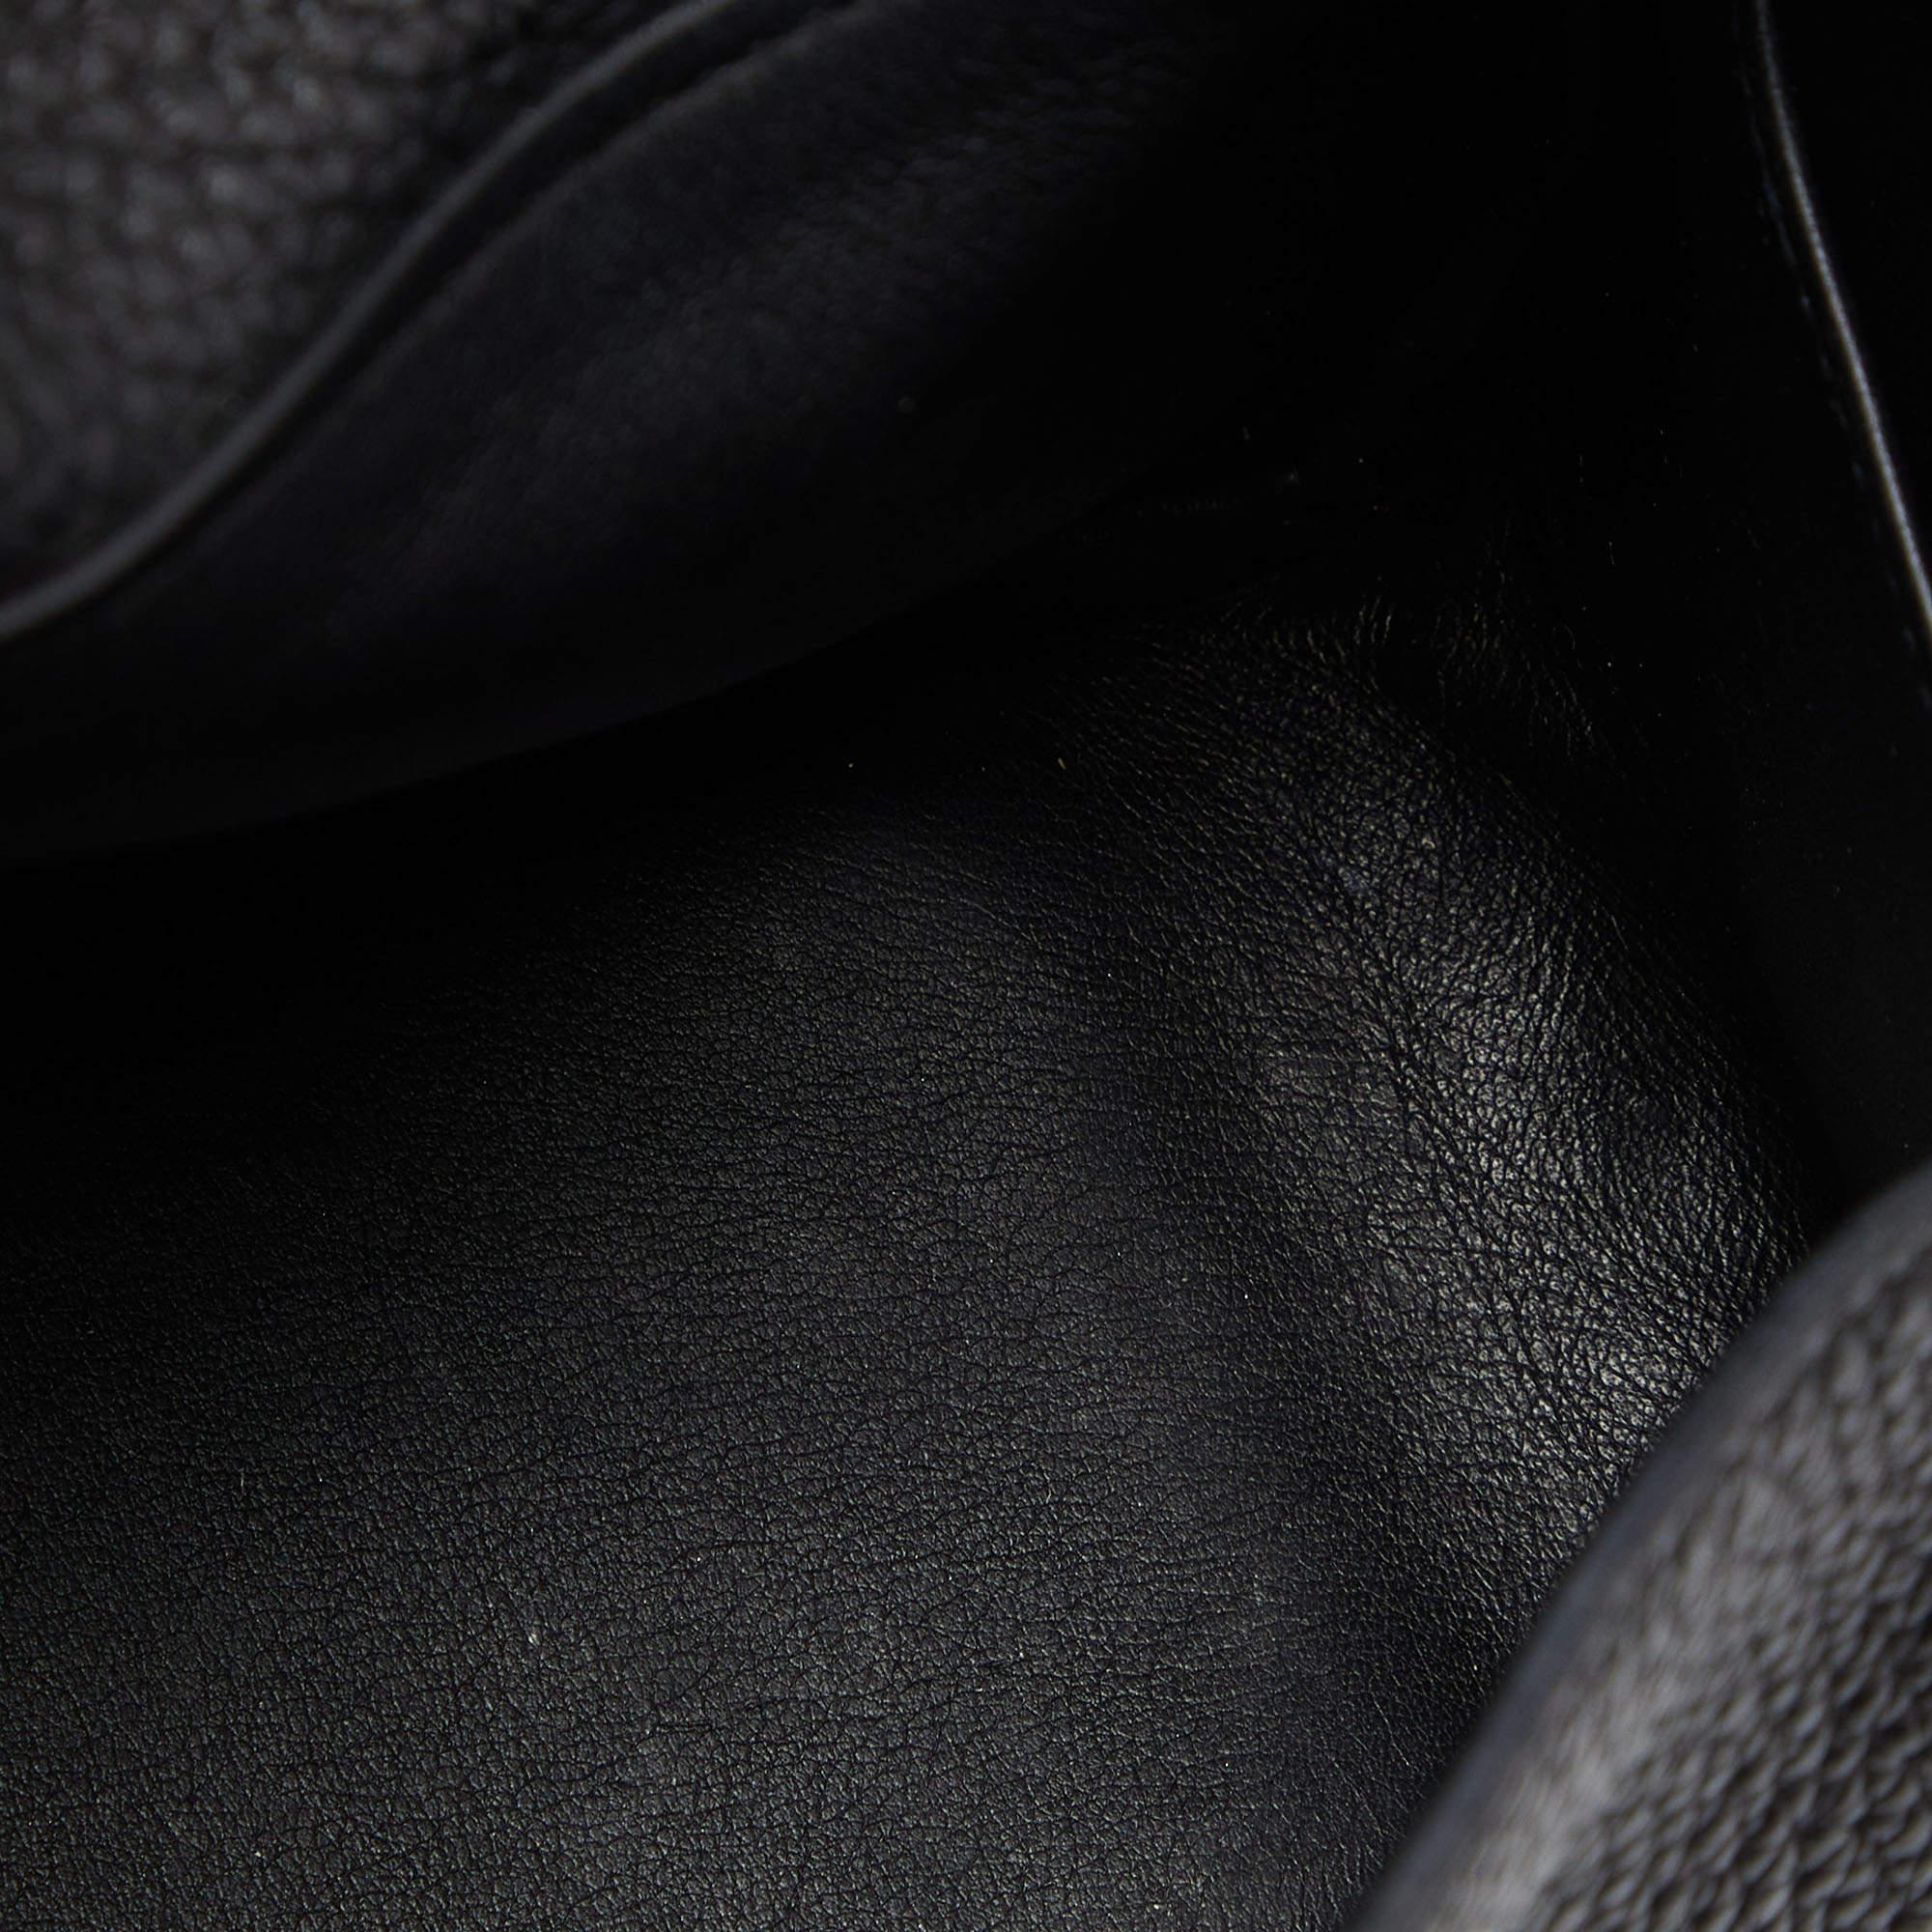 Hermès Black Taurillon Clemence Leather Gold Finish Mini Lindy Bag 5